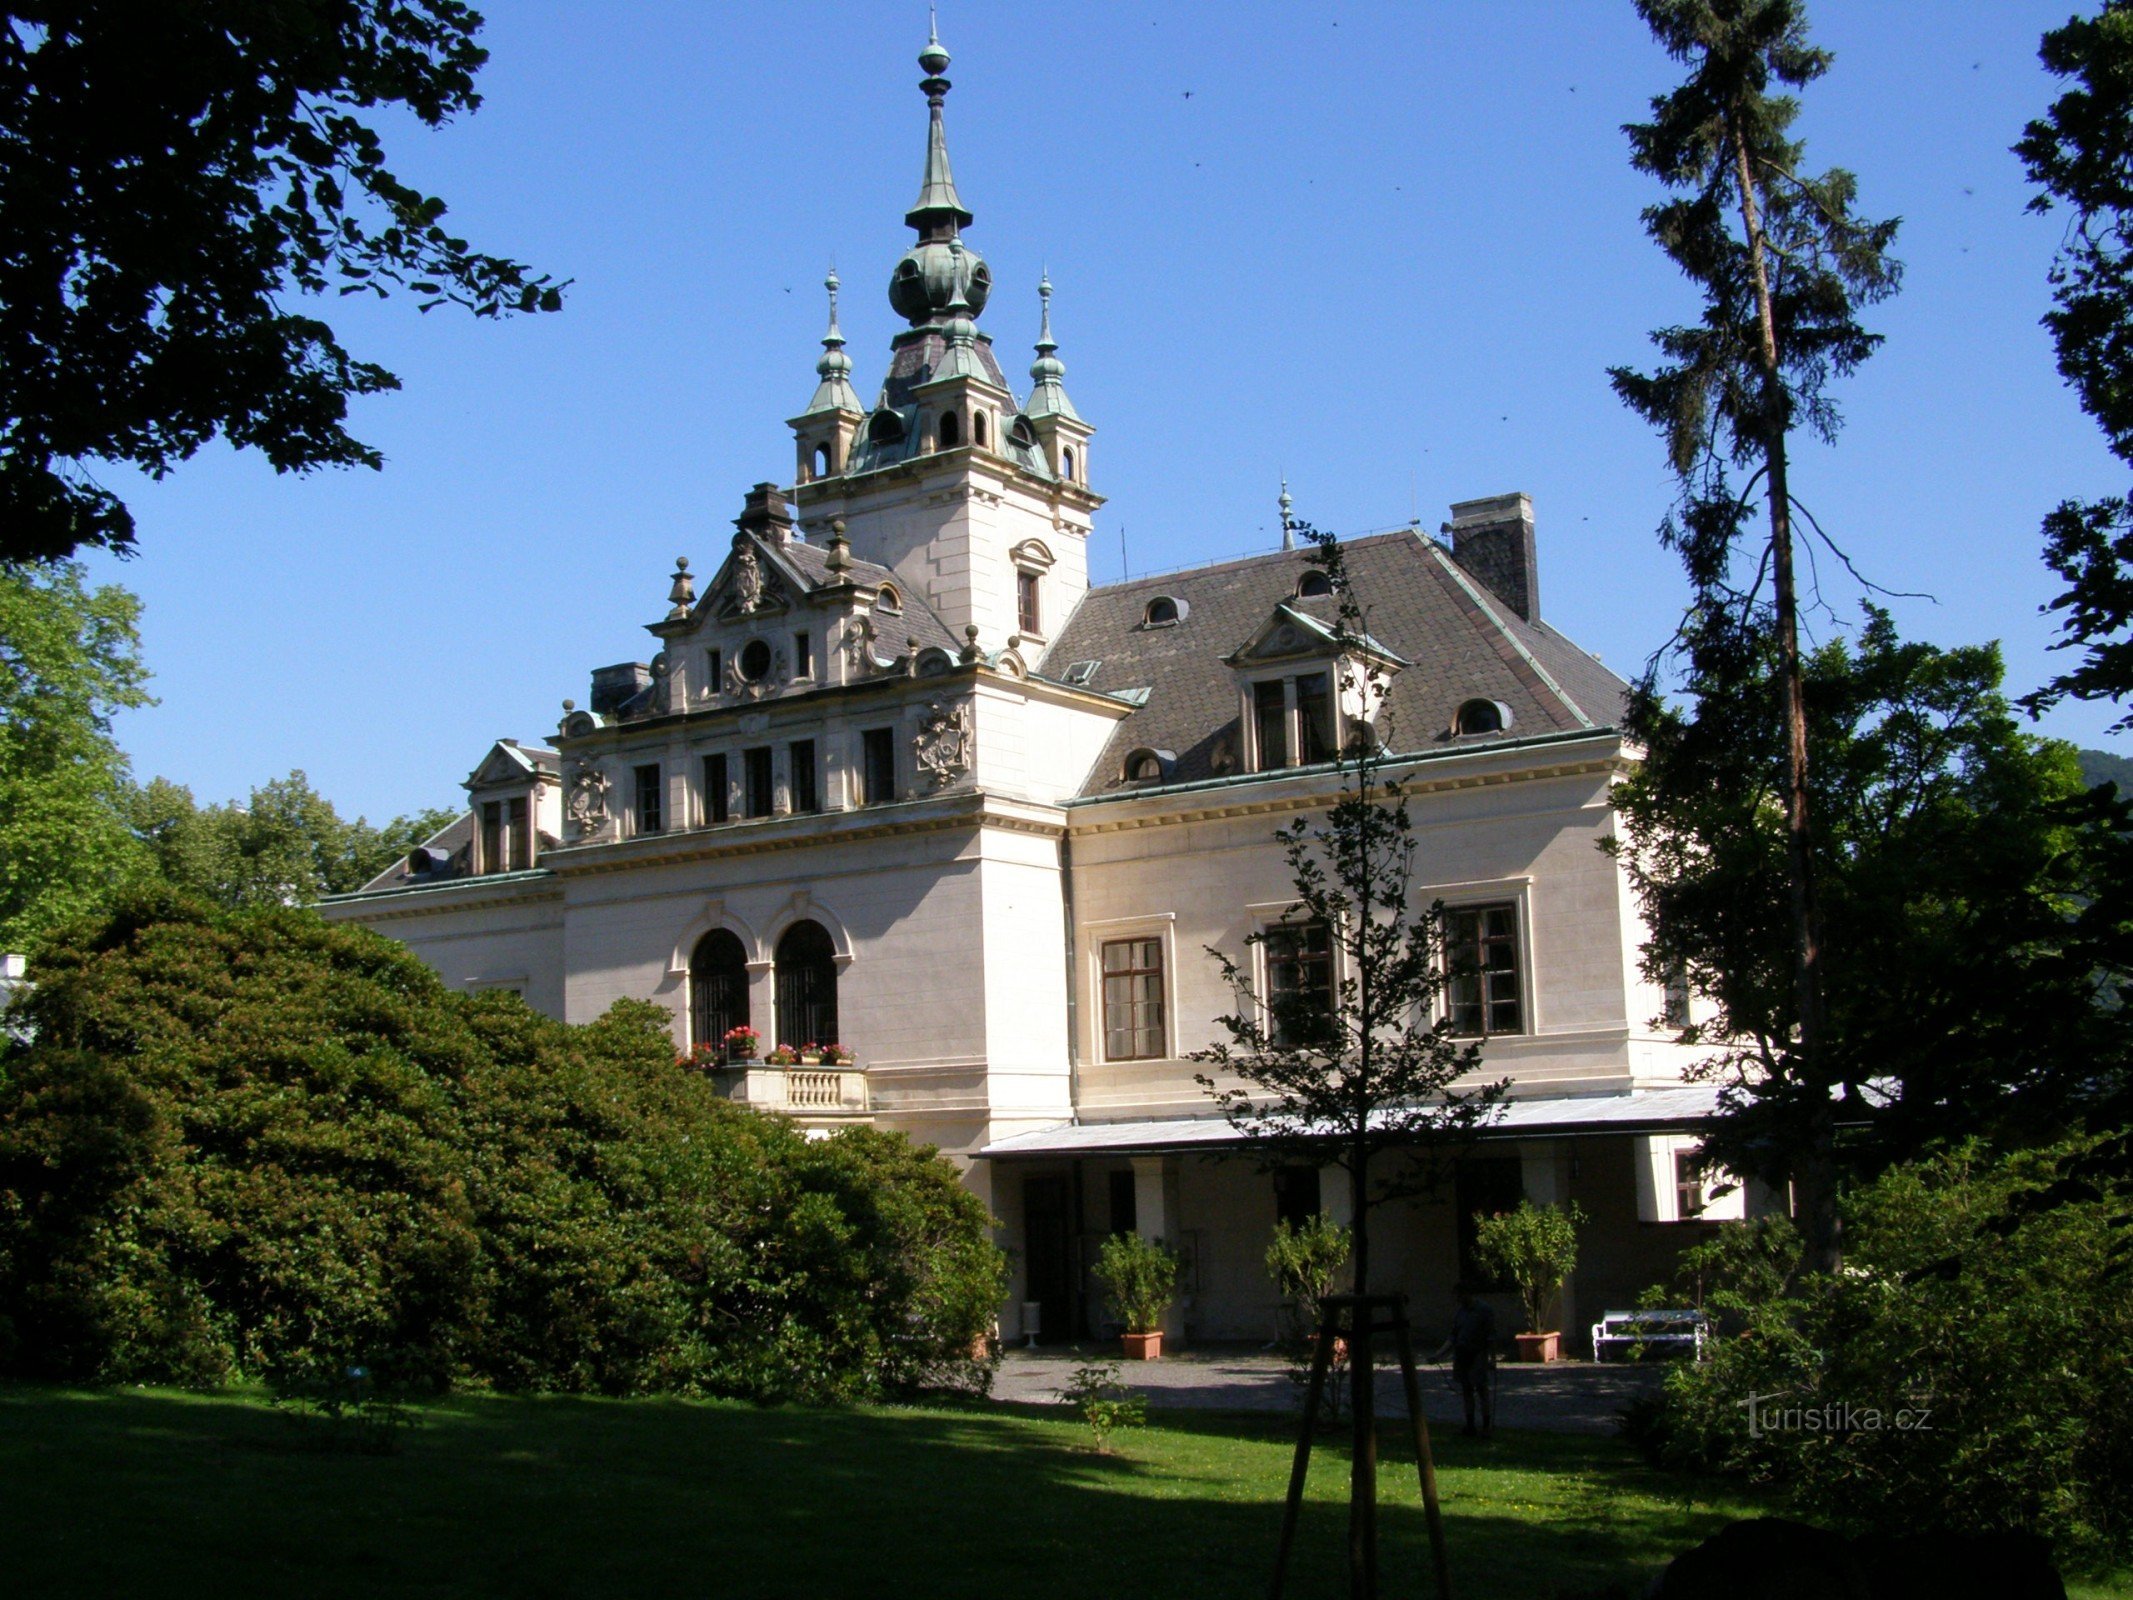 Castelo de Velké Březno